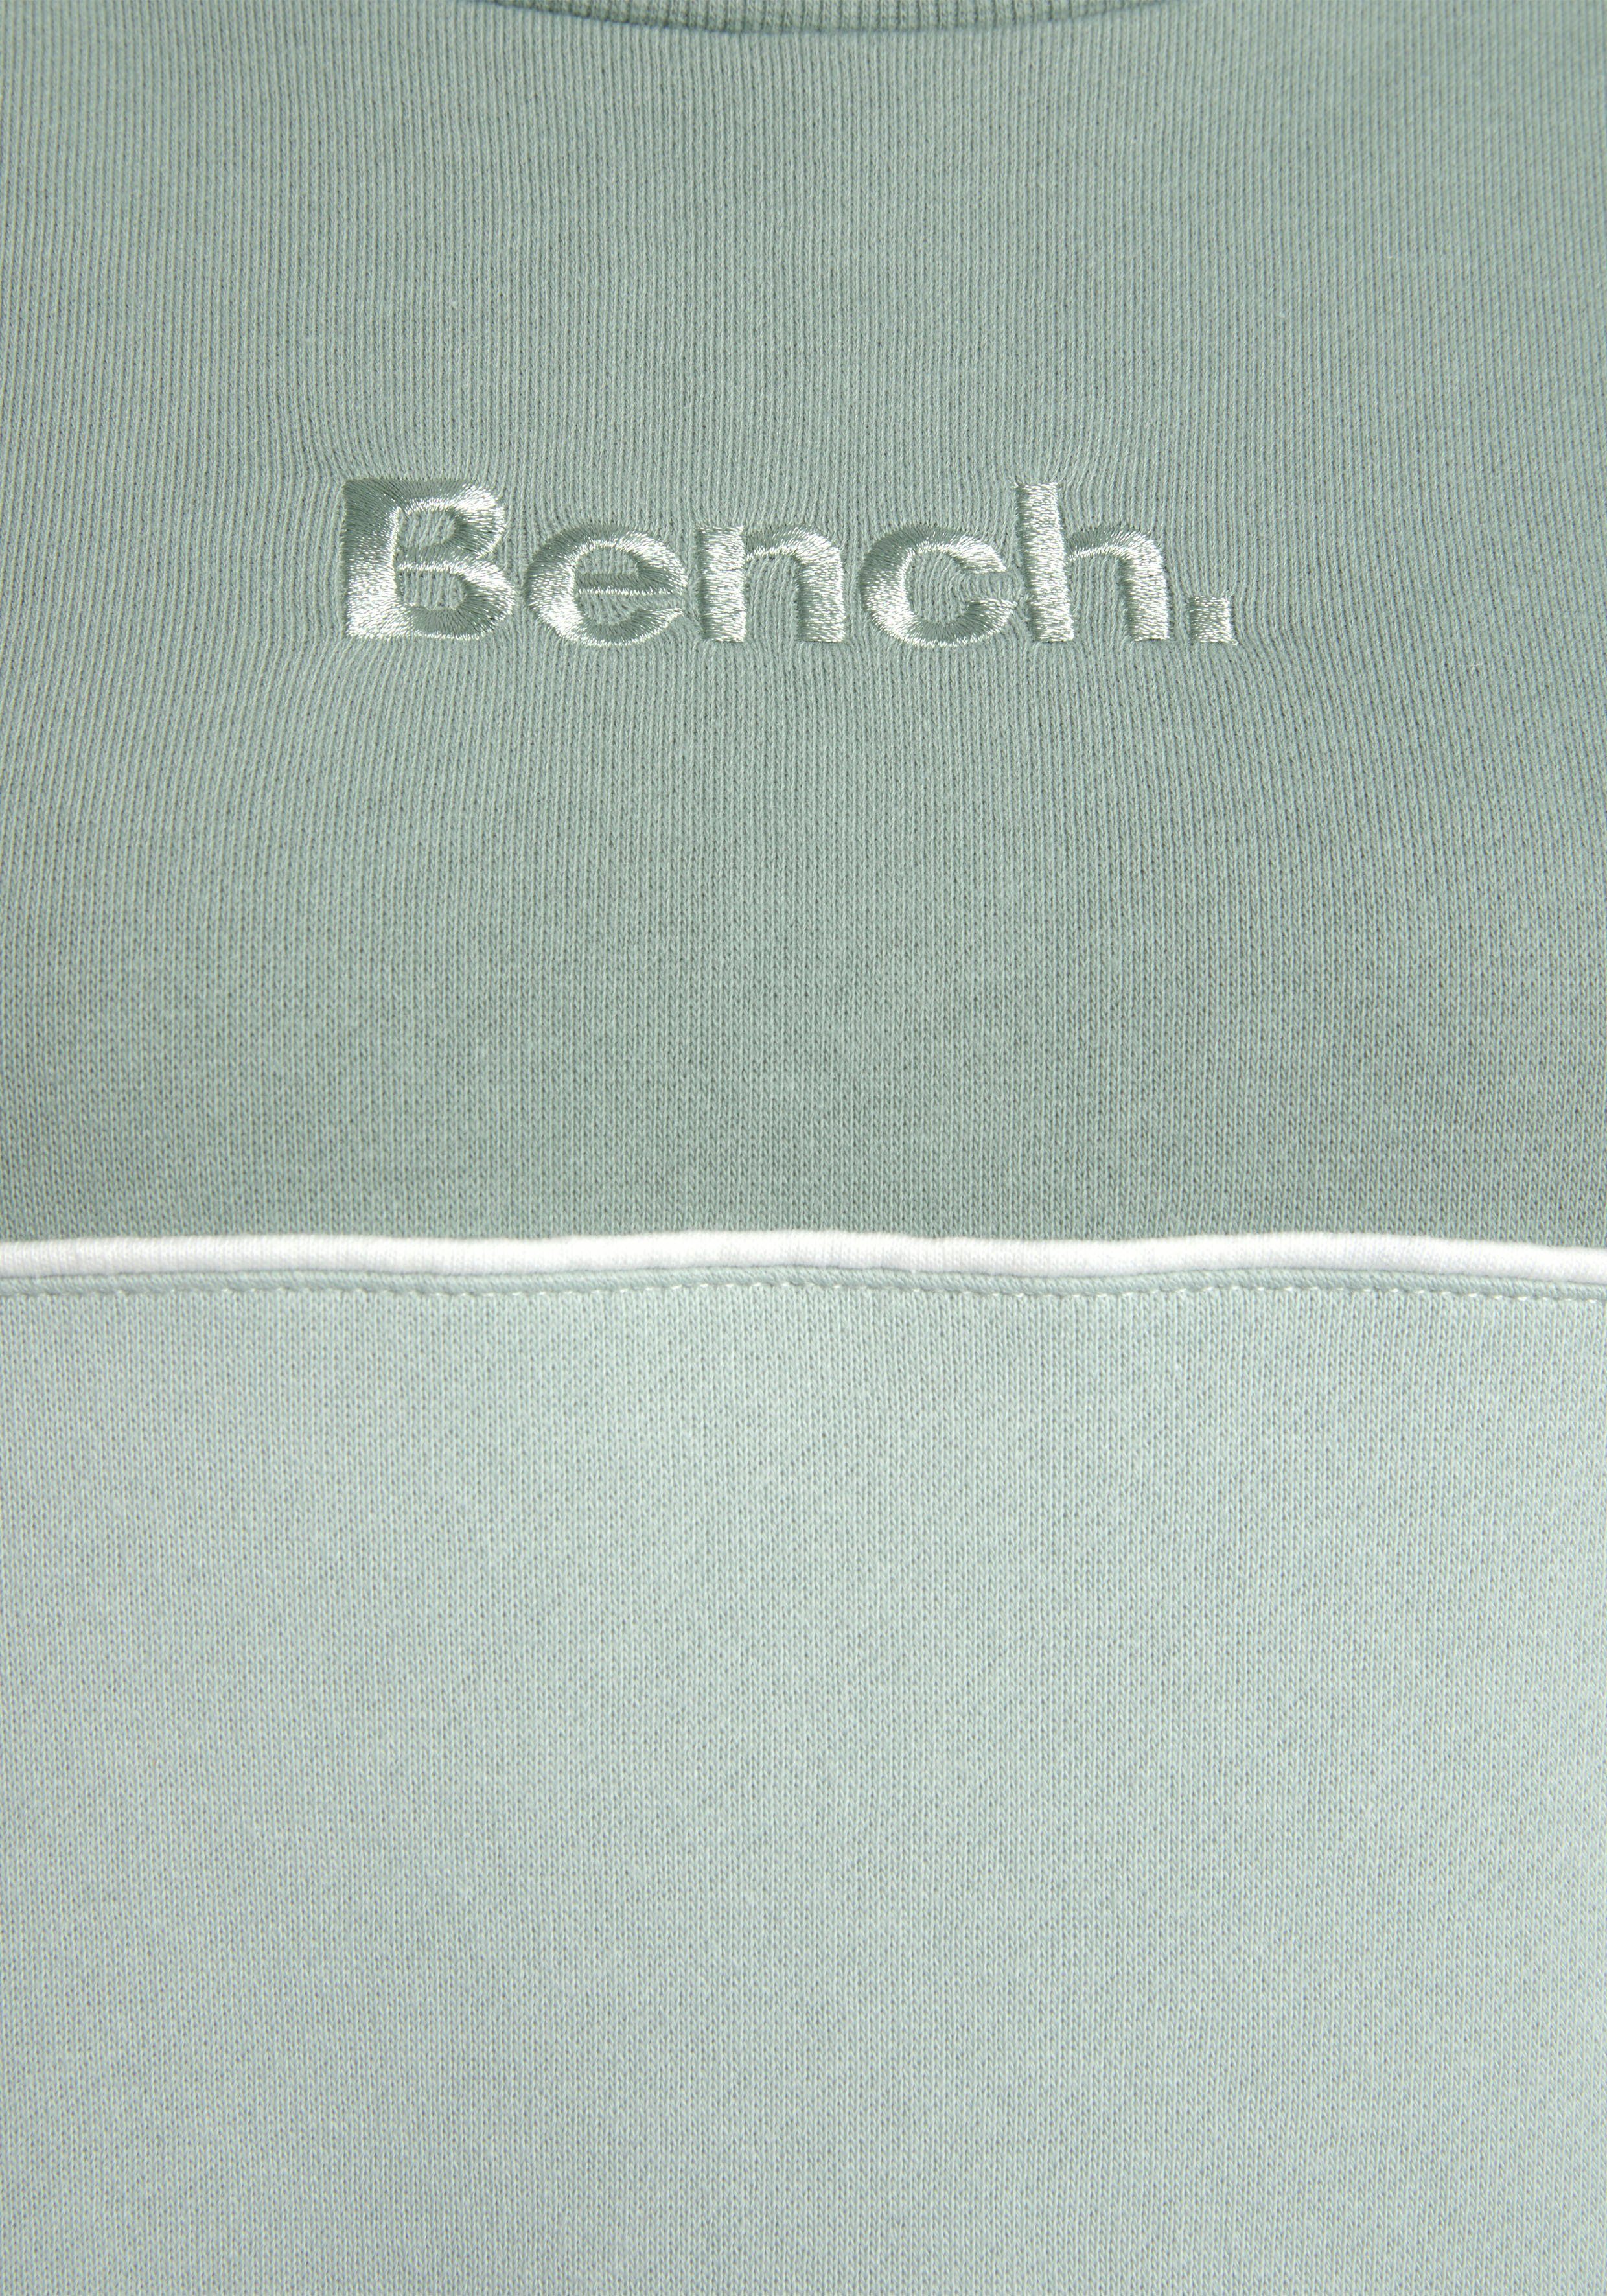 Bench. Sweatkleid in Farben zwei grün-graugrün Logostickerei mit